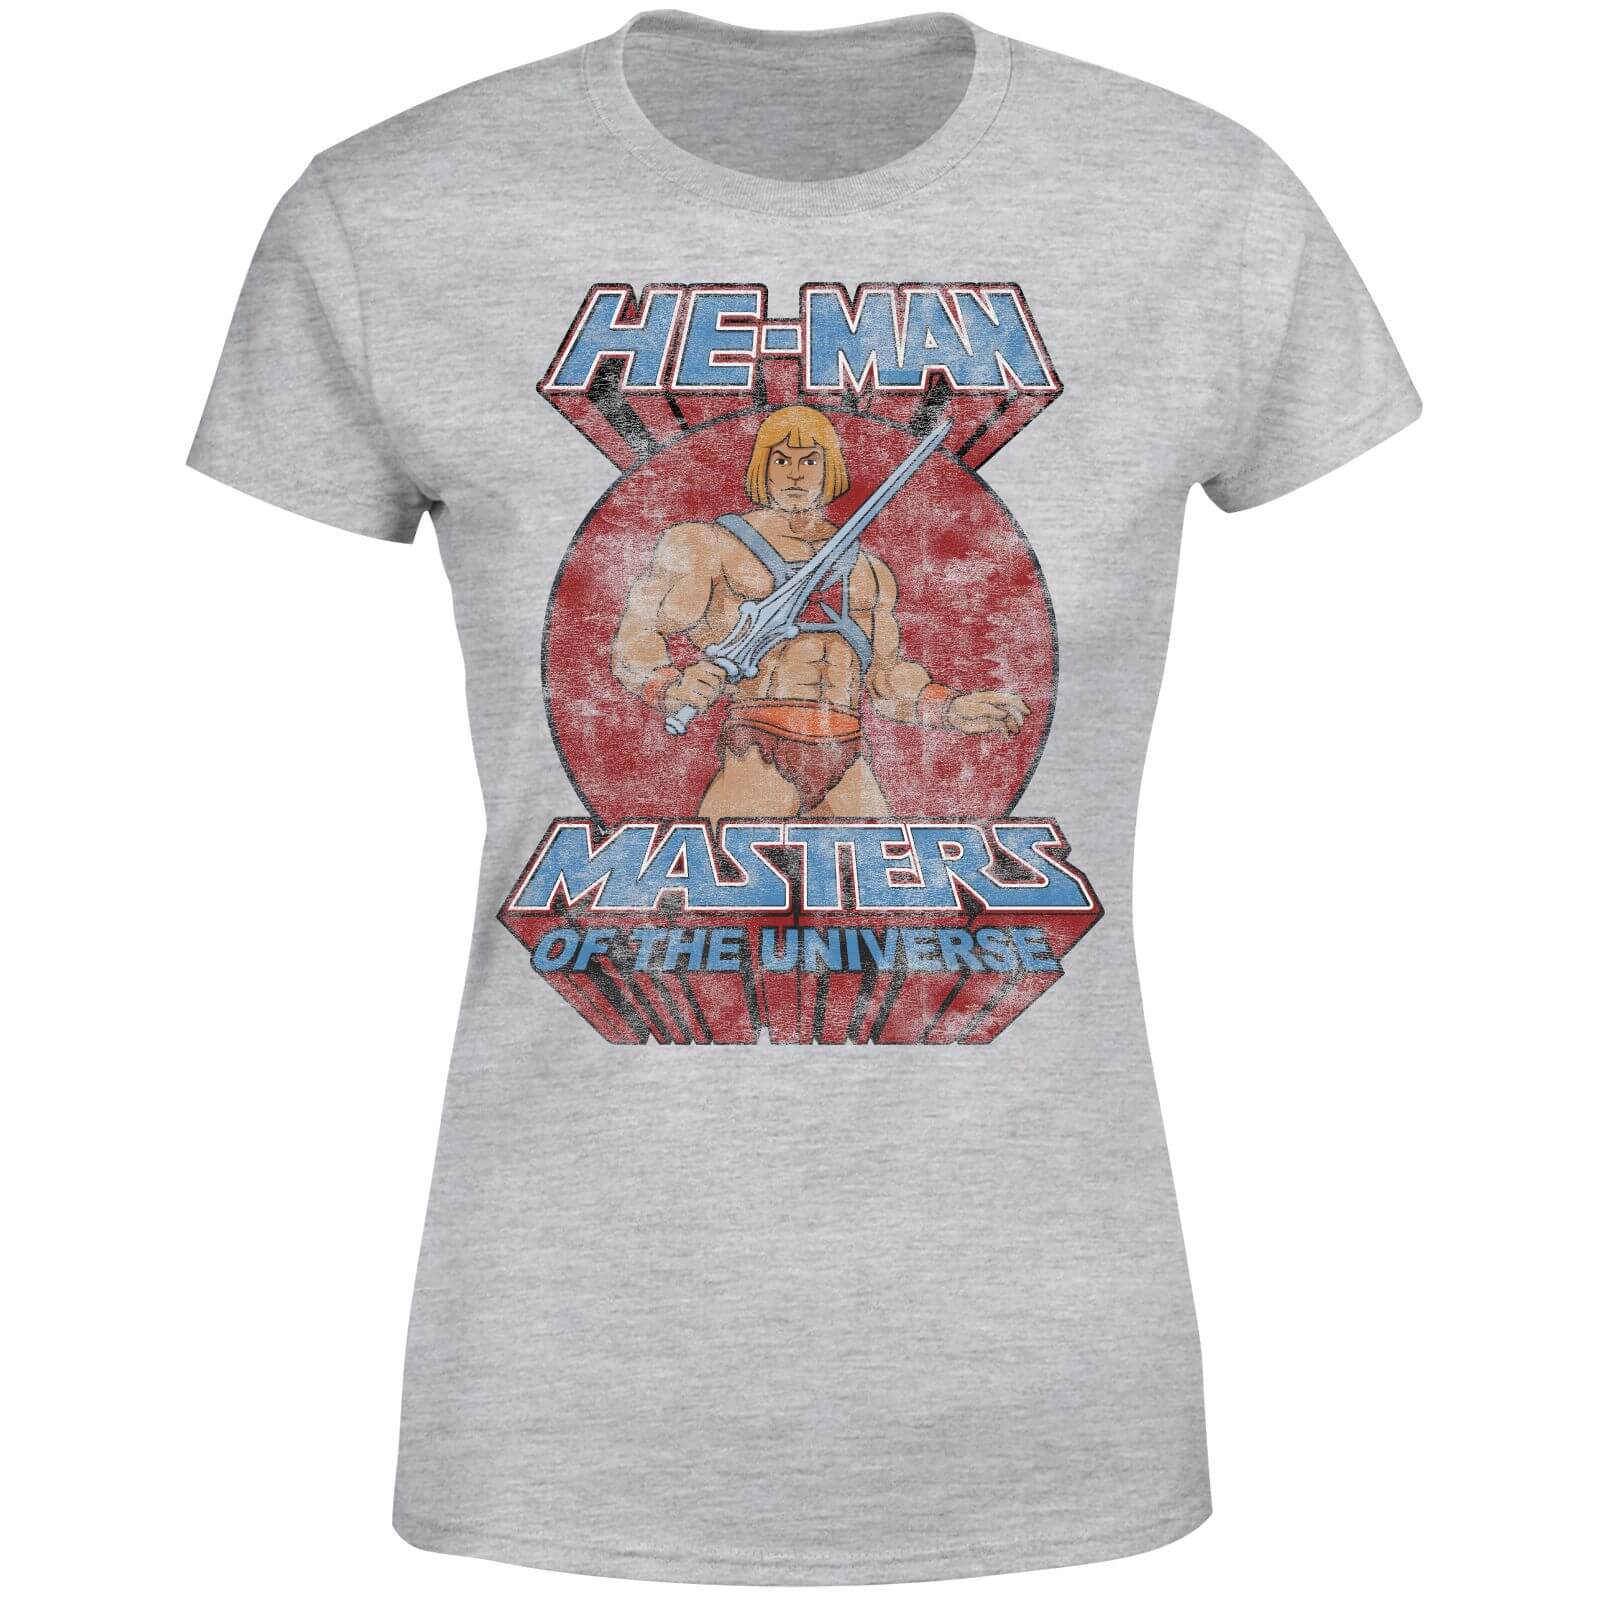 He-Man Distressed Women's T-Shirt - Grey - M